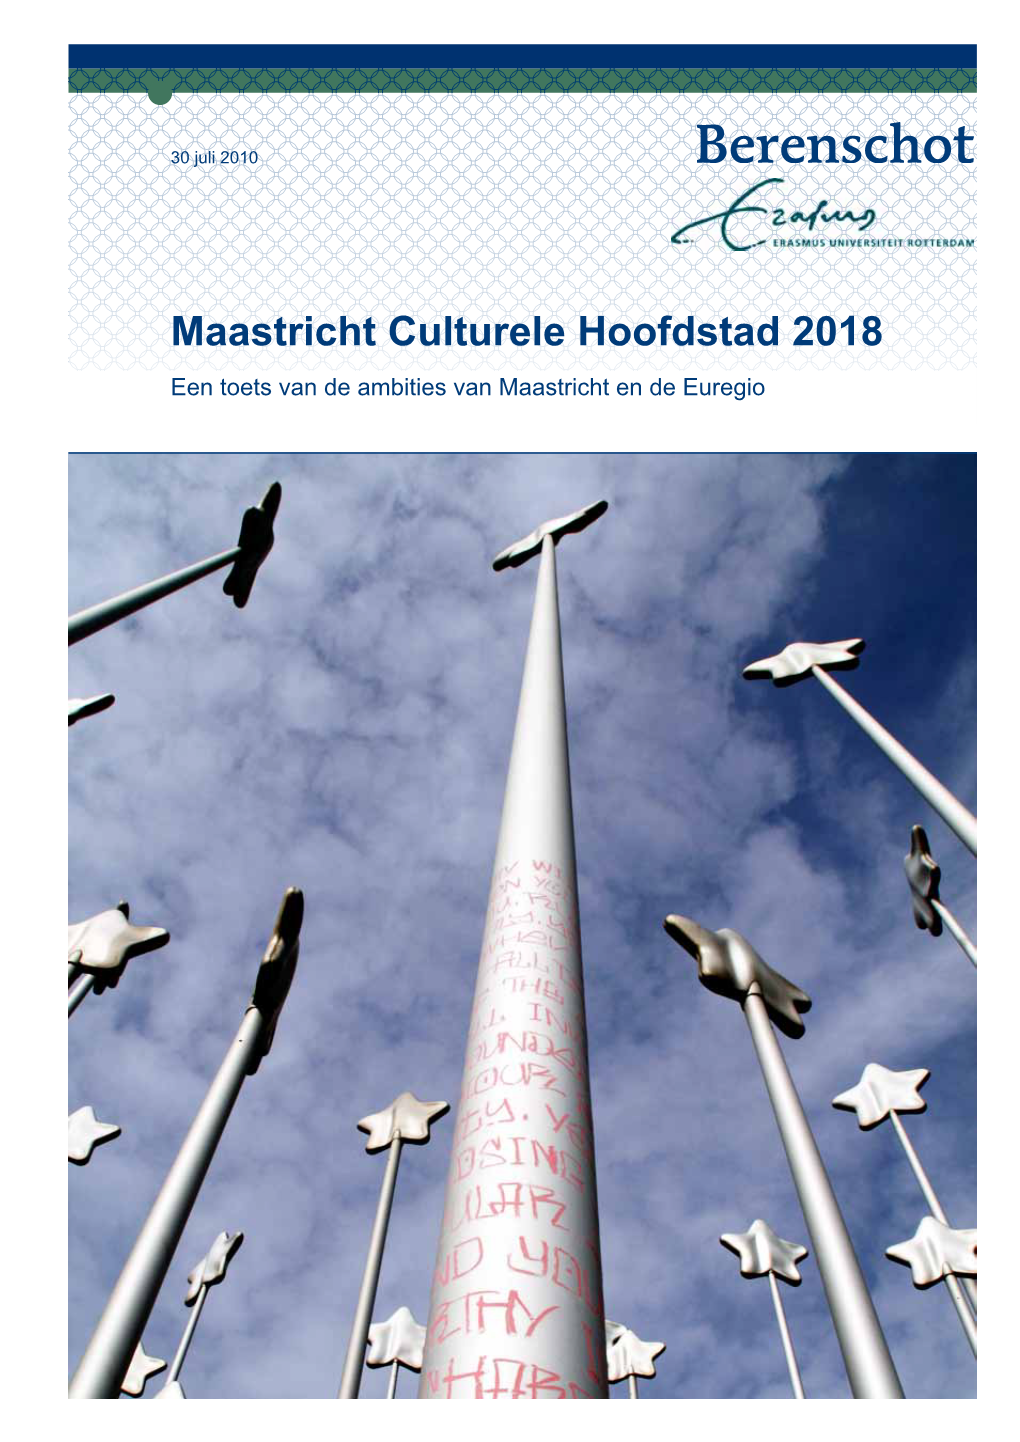 Maastricht Culturele Hoofdstad 2018 Een Toets Van De Ambities Van Maastricht En De Euregio 2 Maastricht Culturele Hoofdstad 2018 Maastricht Culturele Hoofdstad 2018